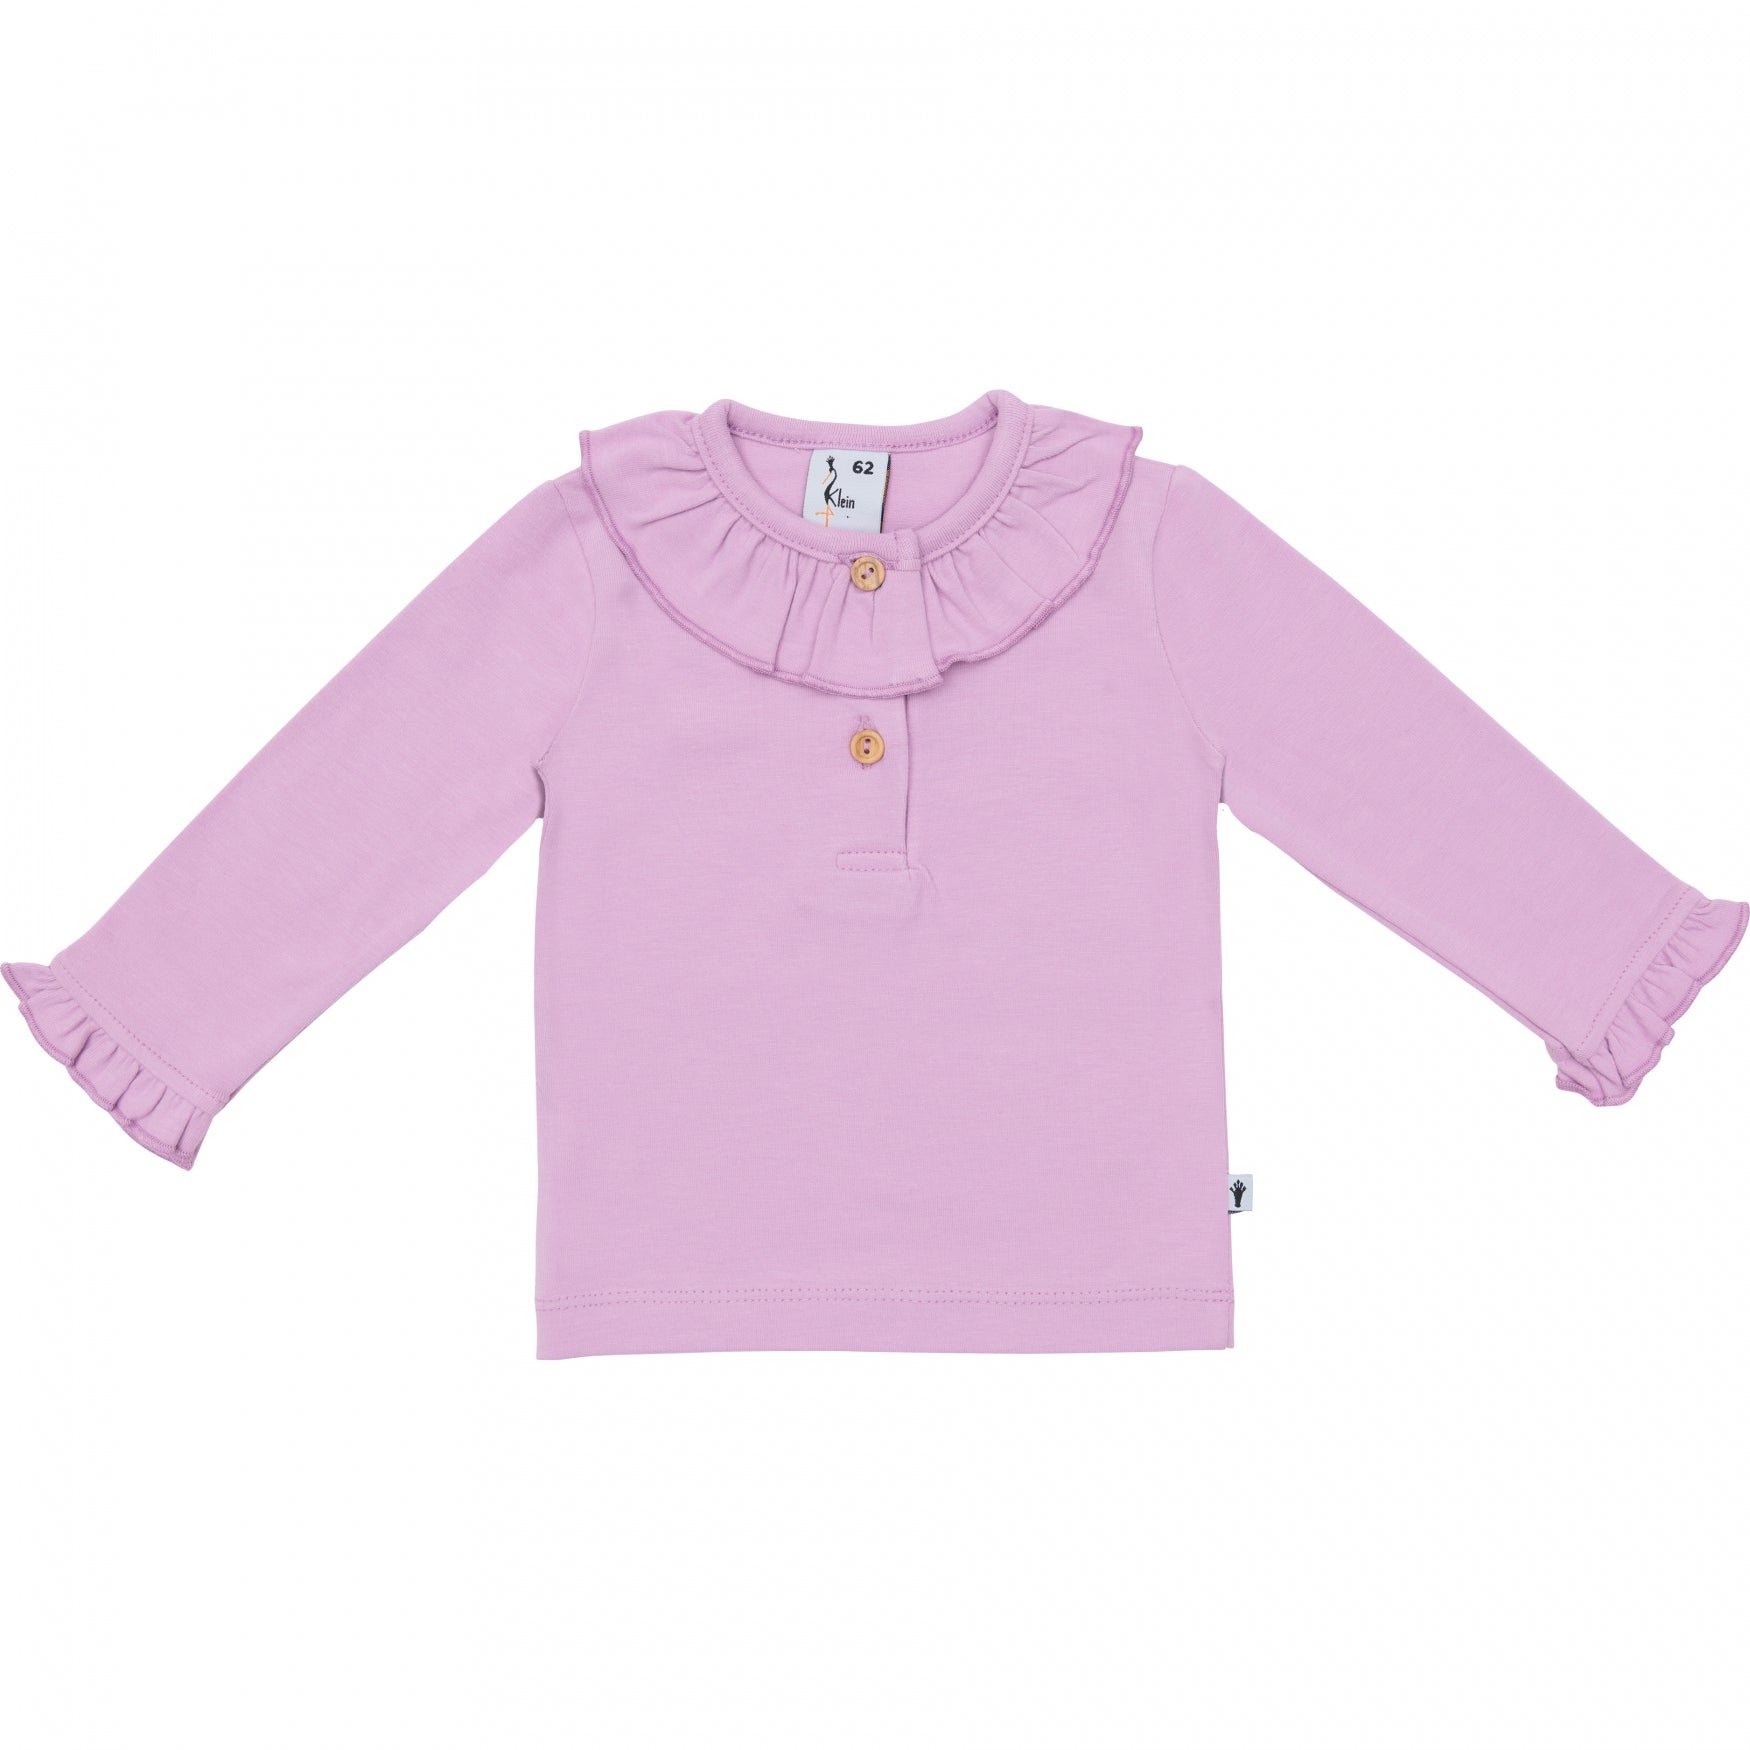 Meisjes Shirt Ruffle Collar van Klein Baby in de kleur Violet Tulle in maat 86.